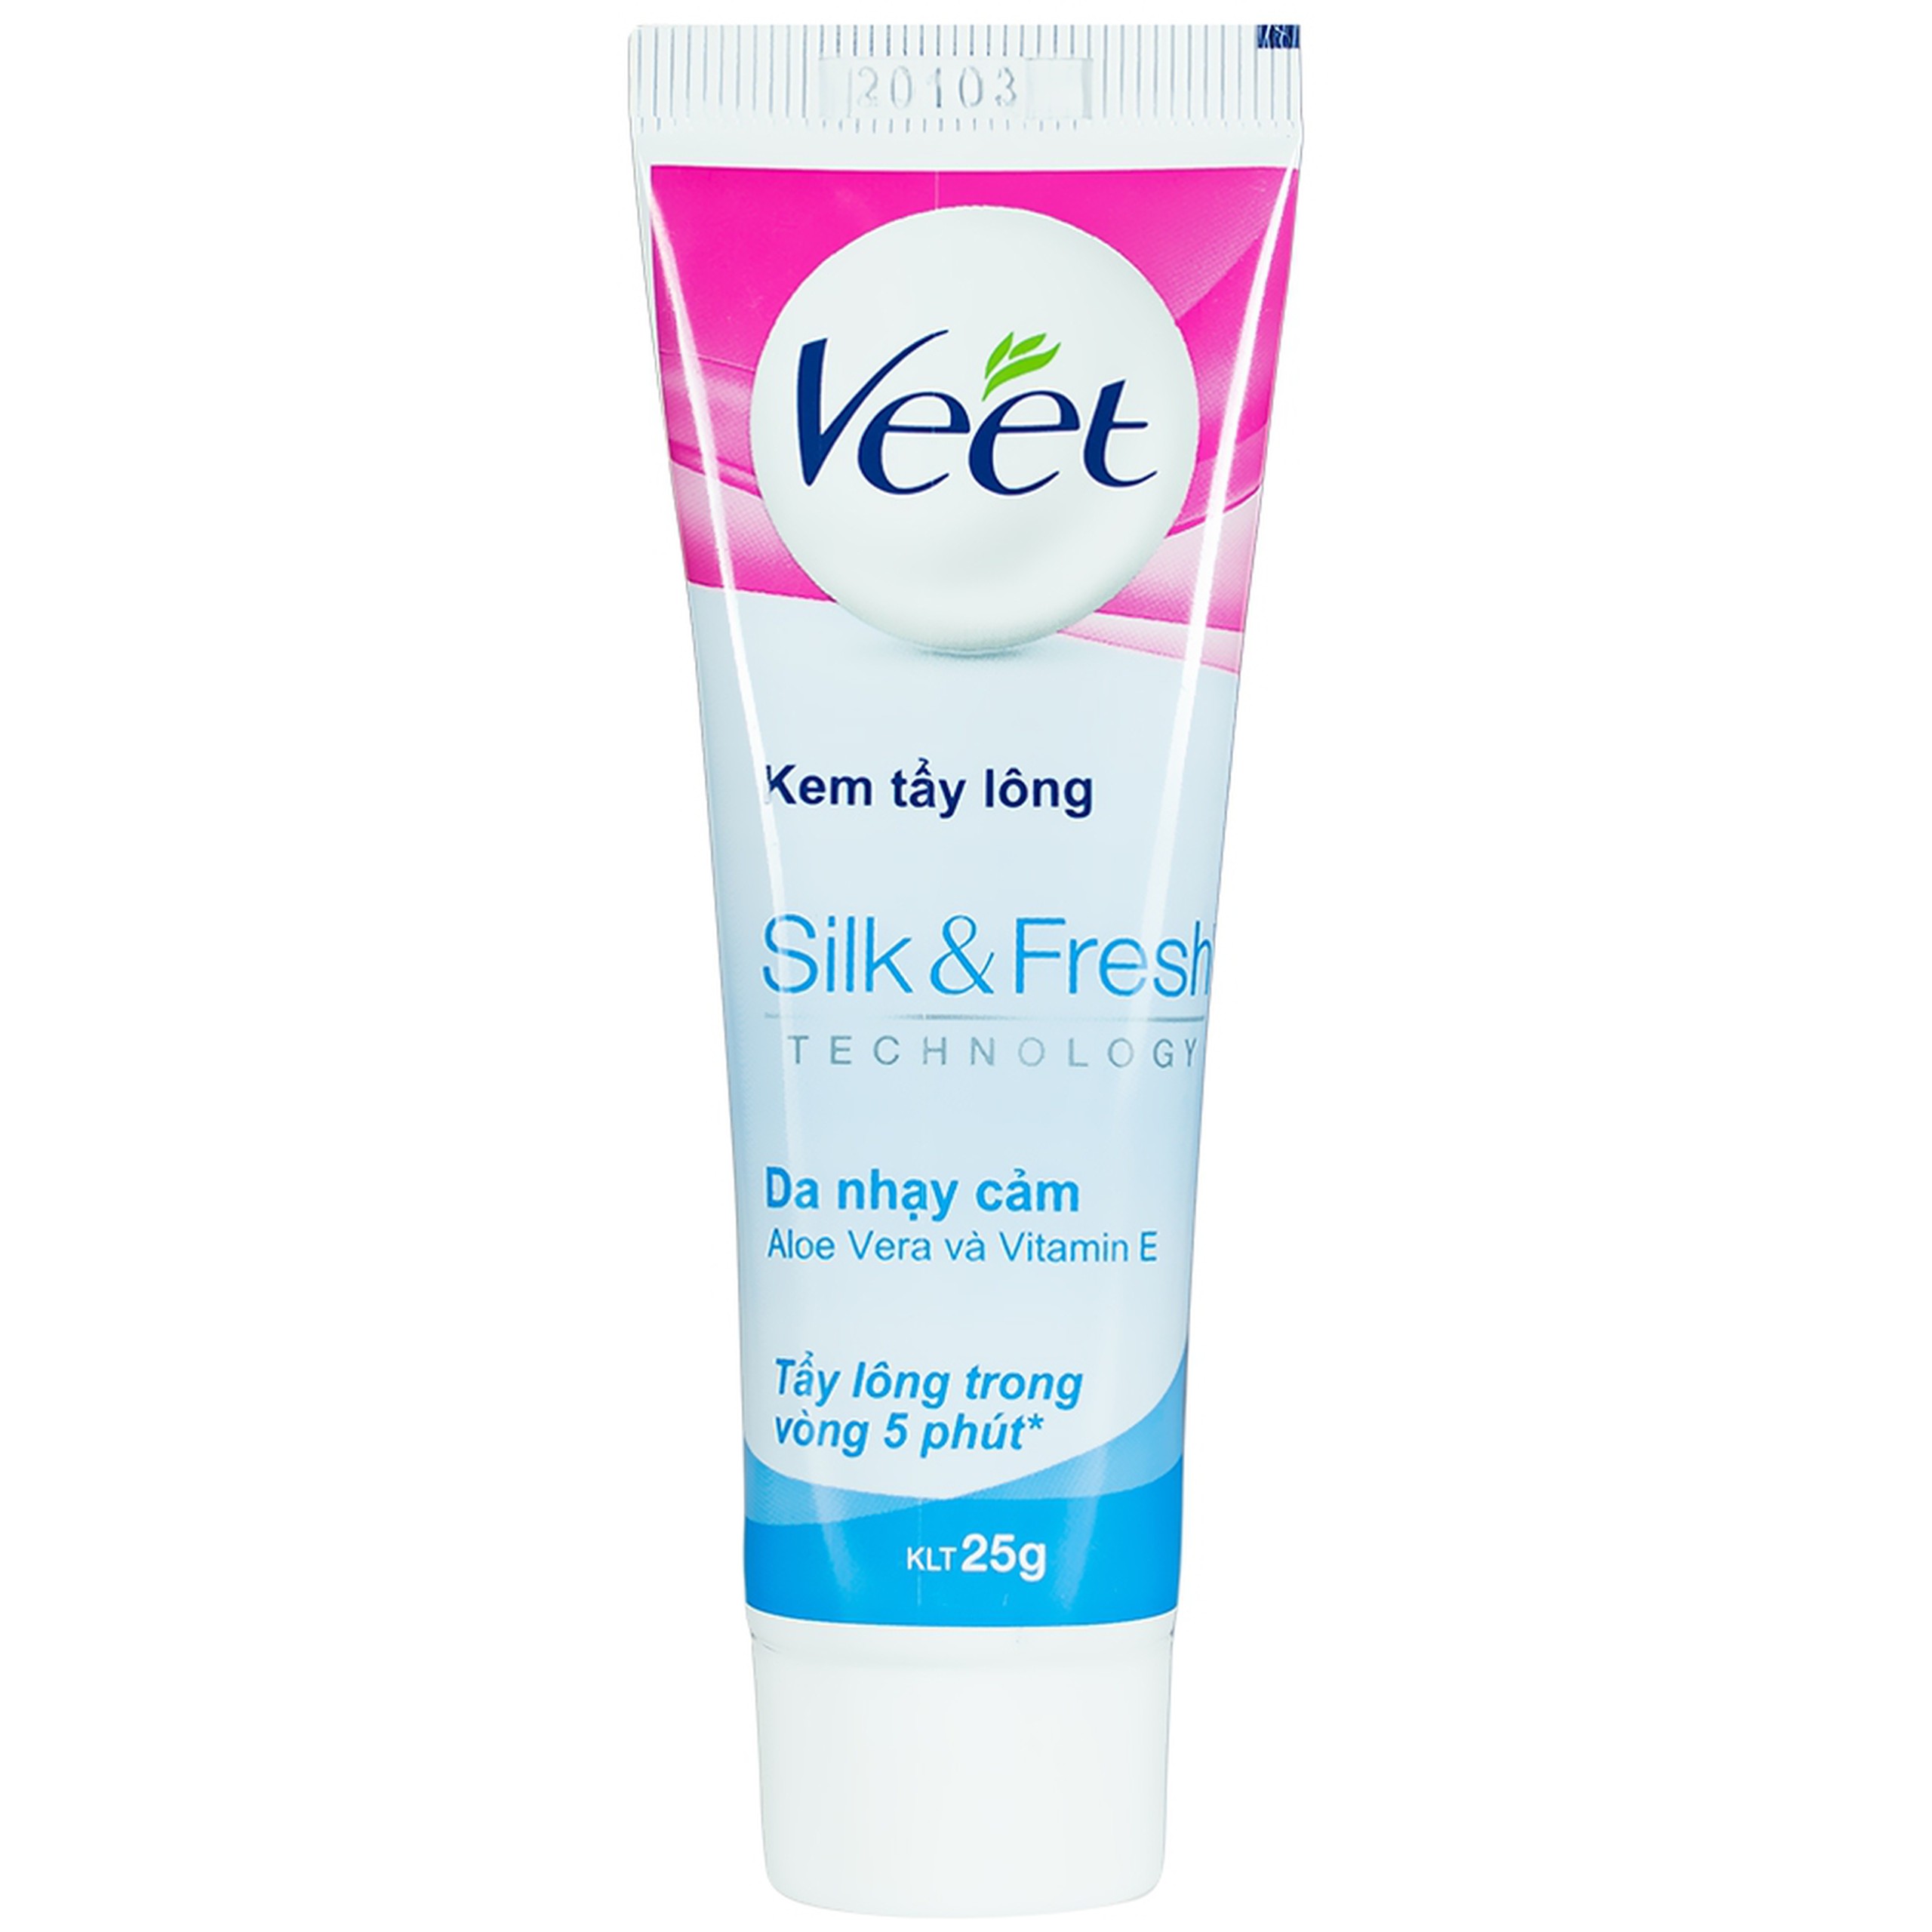 Kem tẩy lông Veet Silk And Fresh trong 5 phút dành cho da nhạy cảm (25g)